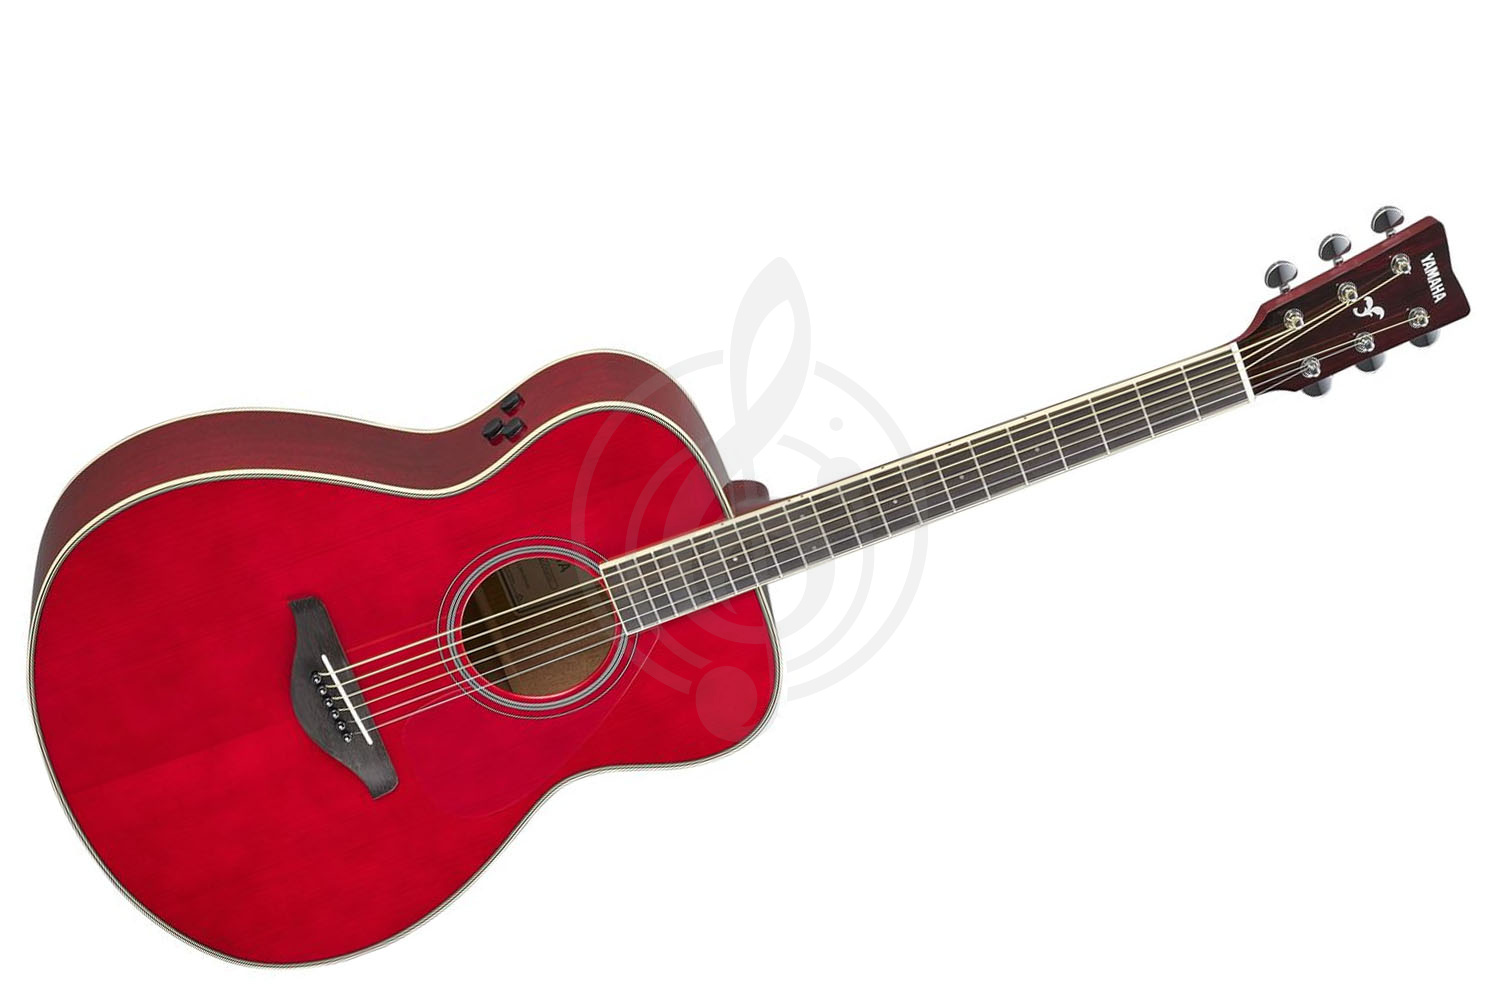 Трансакустическая гитара Трансакустические гитары Yamaha Yamaha FS-TA RR - трансакустическая гитара FS-TA RUBY RED - фото 1